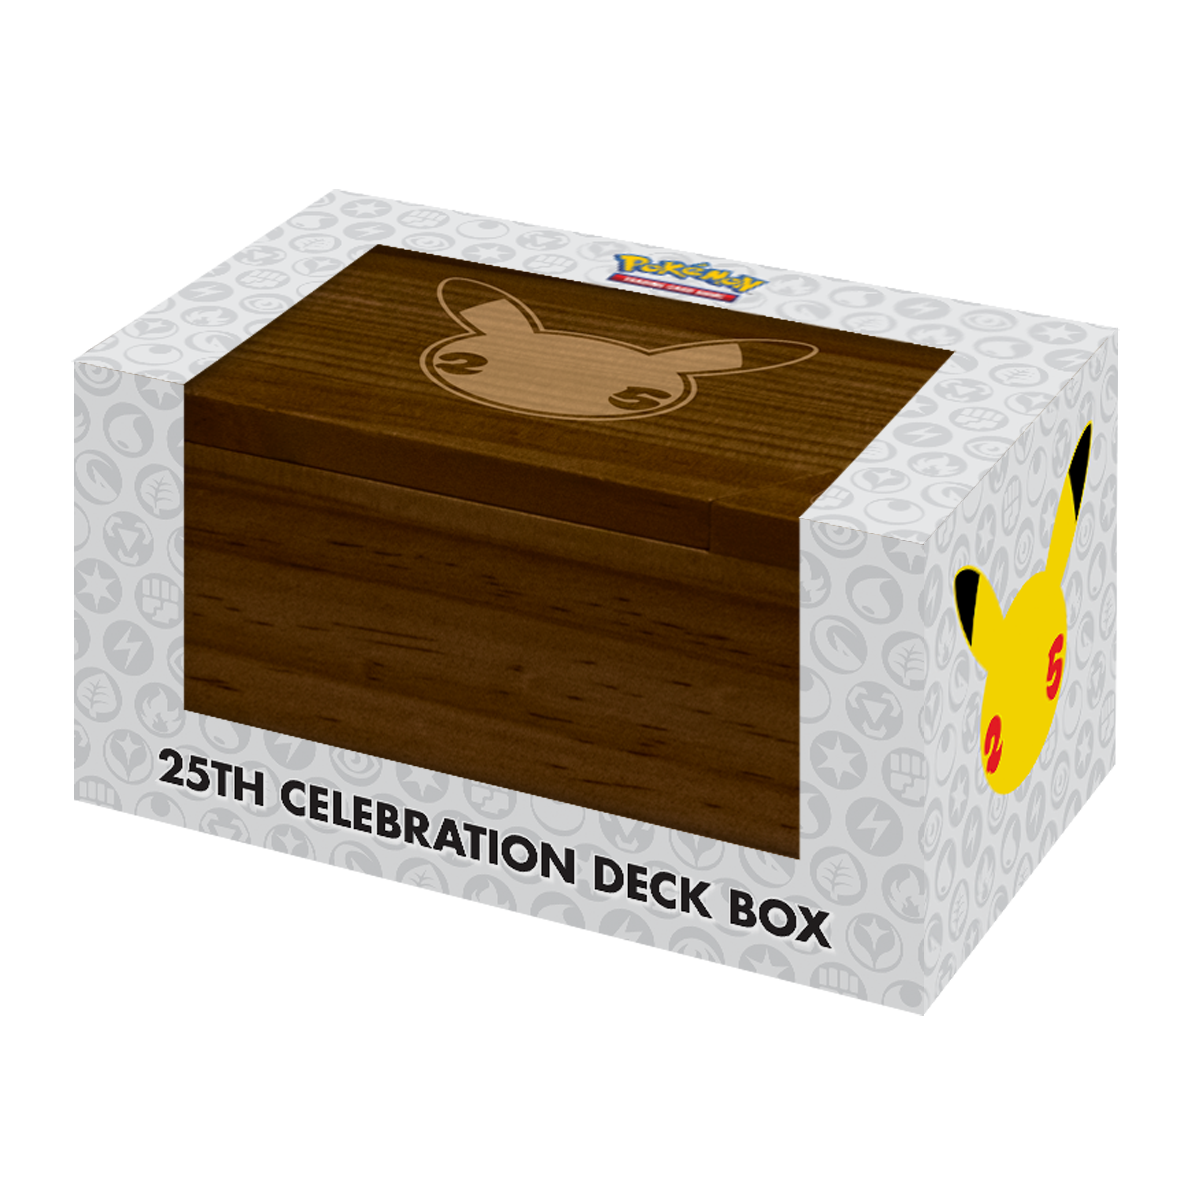 25th Celebration Deck Box for Pokémon | Ultra PRO International